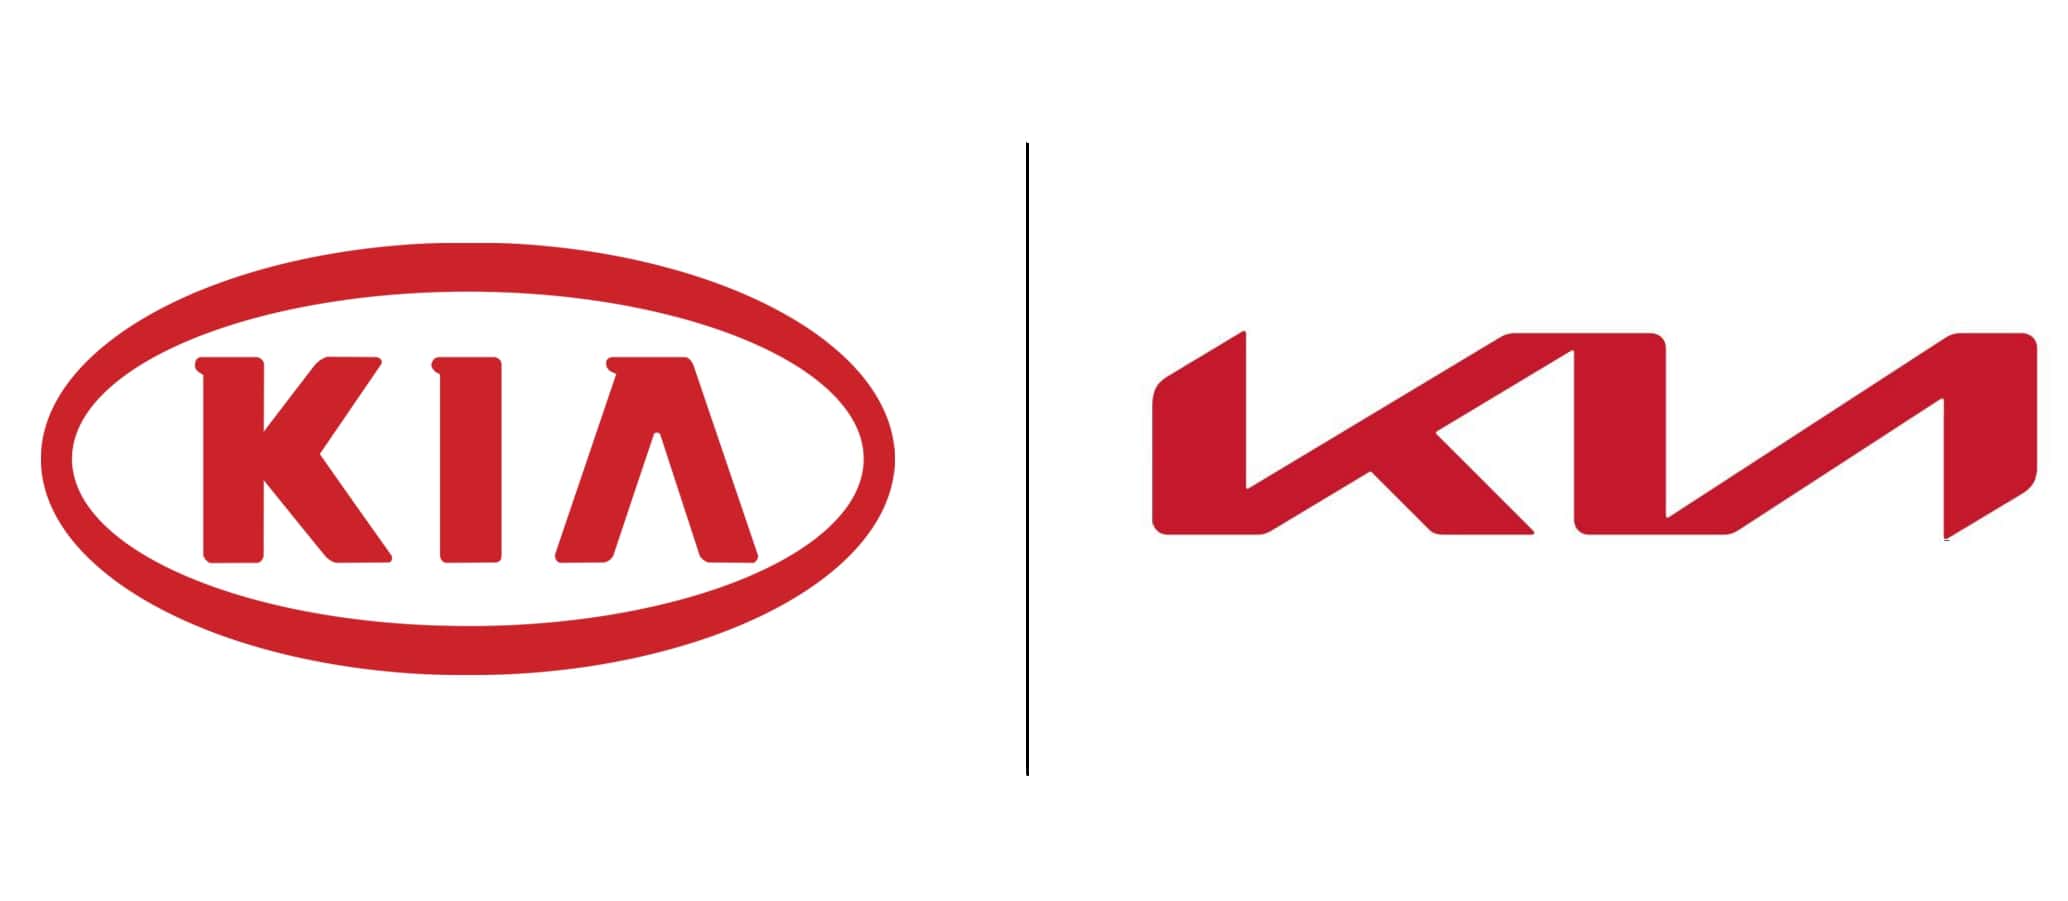 New Old Kia Logo